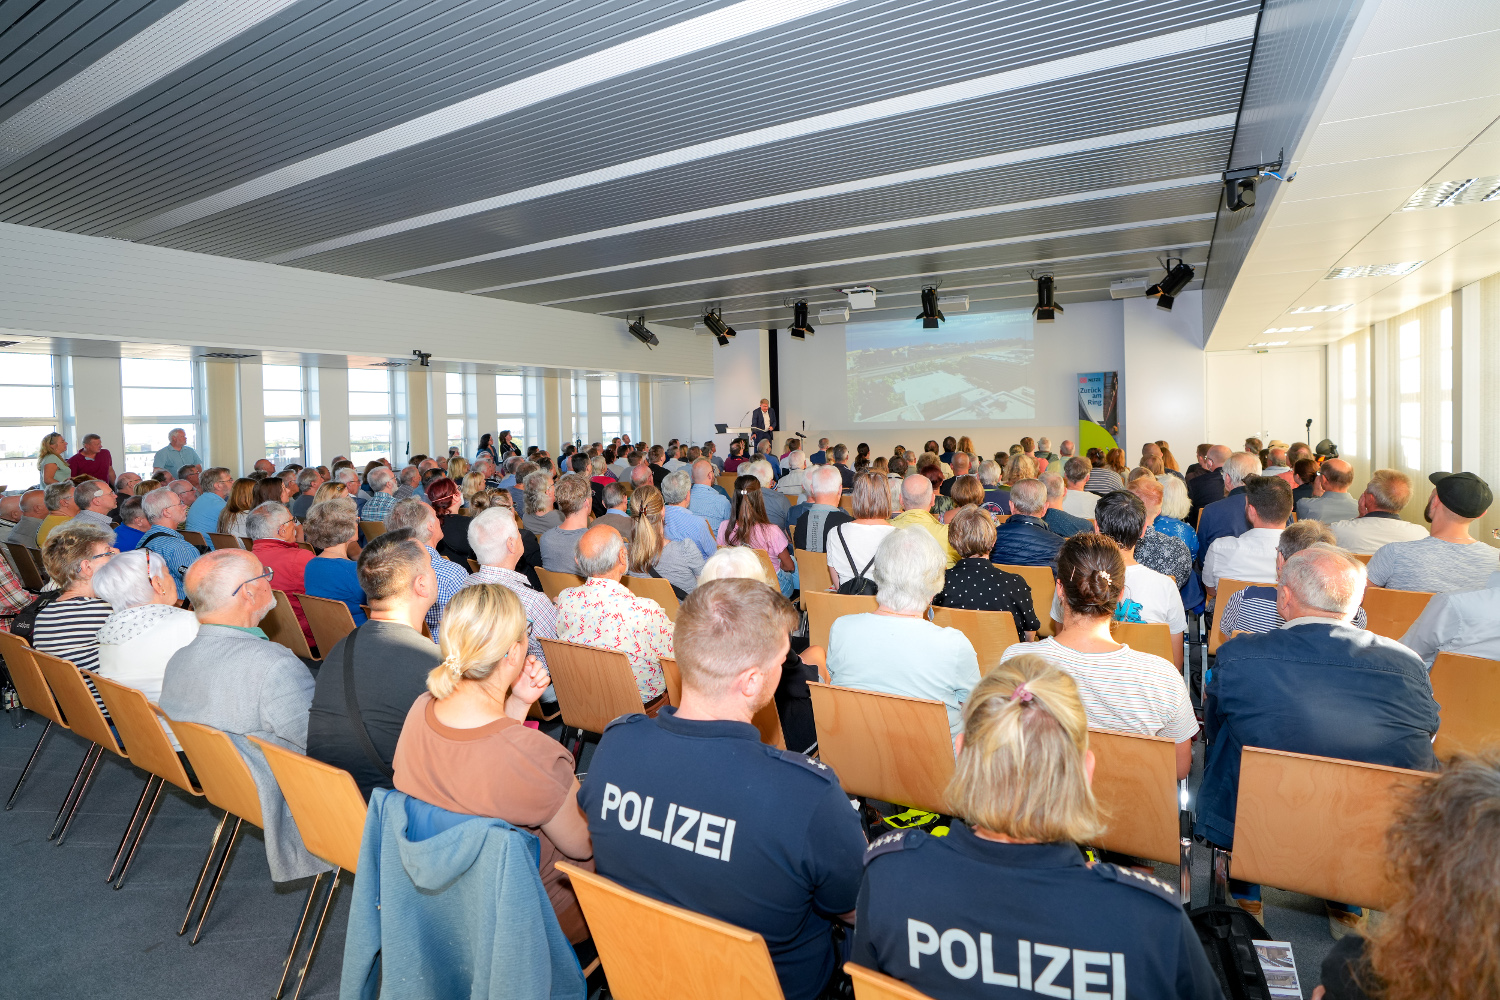 Großes Interesse am Projekt Siemensbahn: Mehr als 260 Menschen haben an der Veranstaltung teilgenommen. (Foto: SenMVKU/Vorwerk)